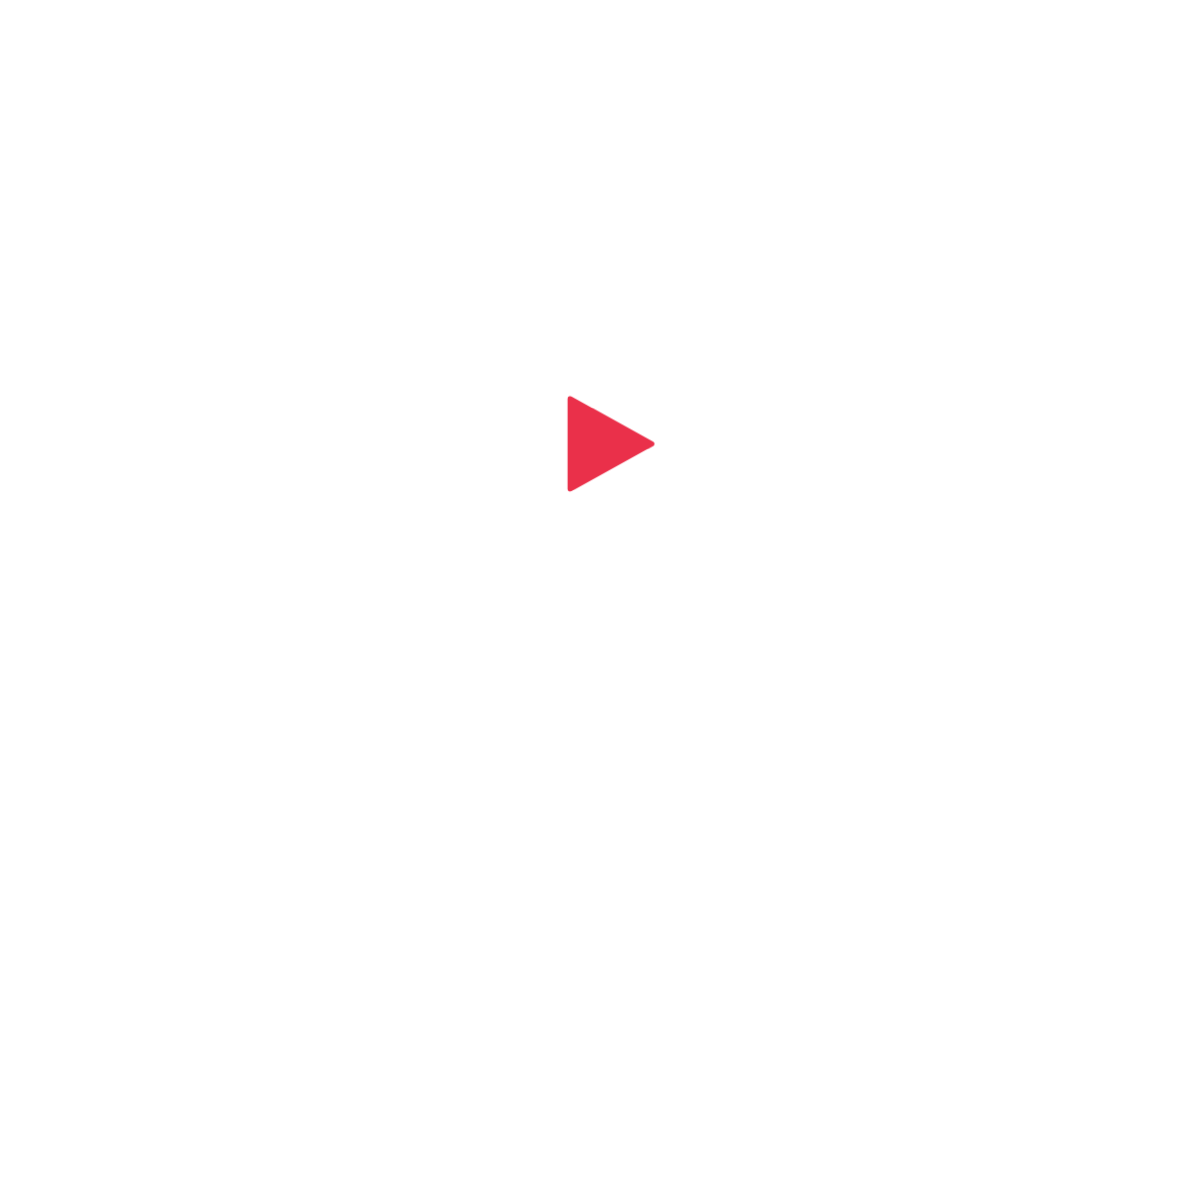 podinbox logo square white